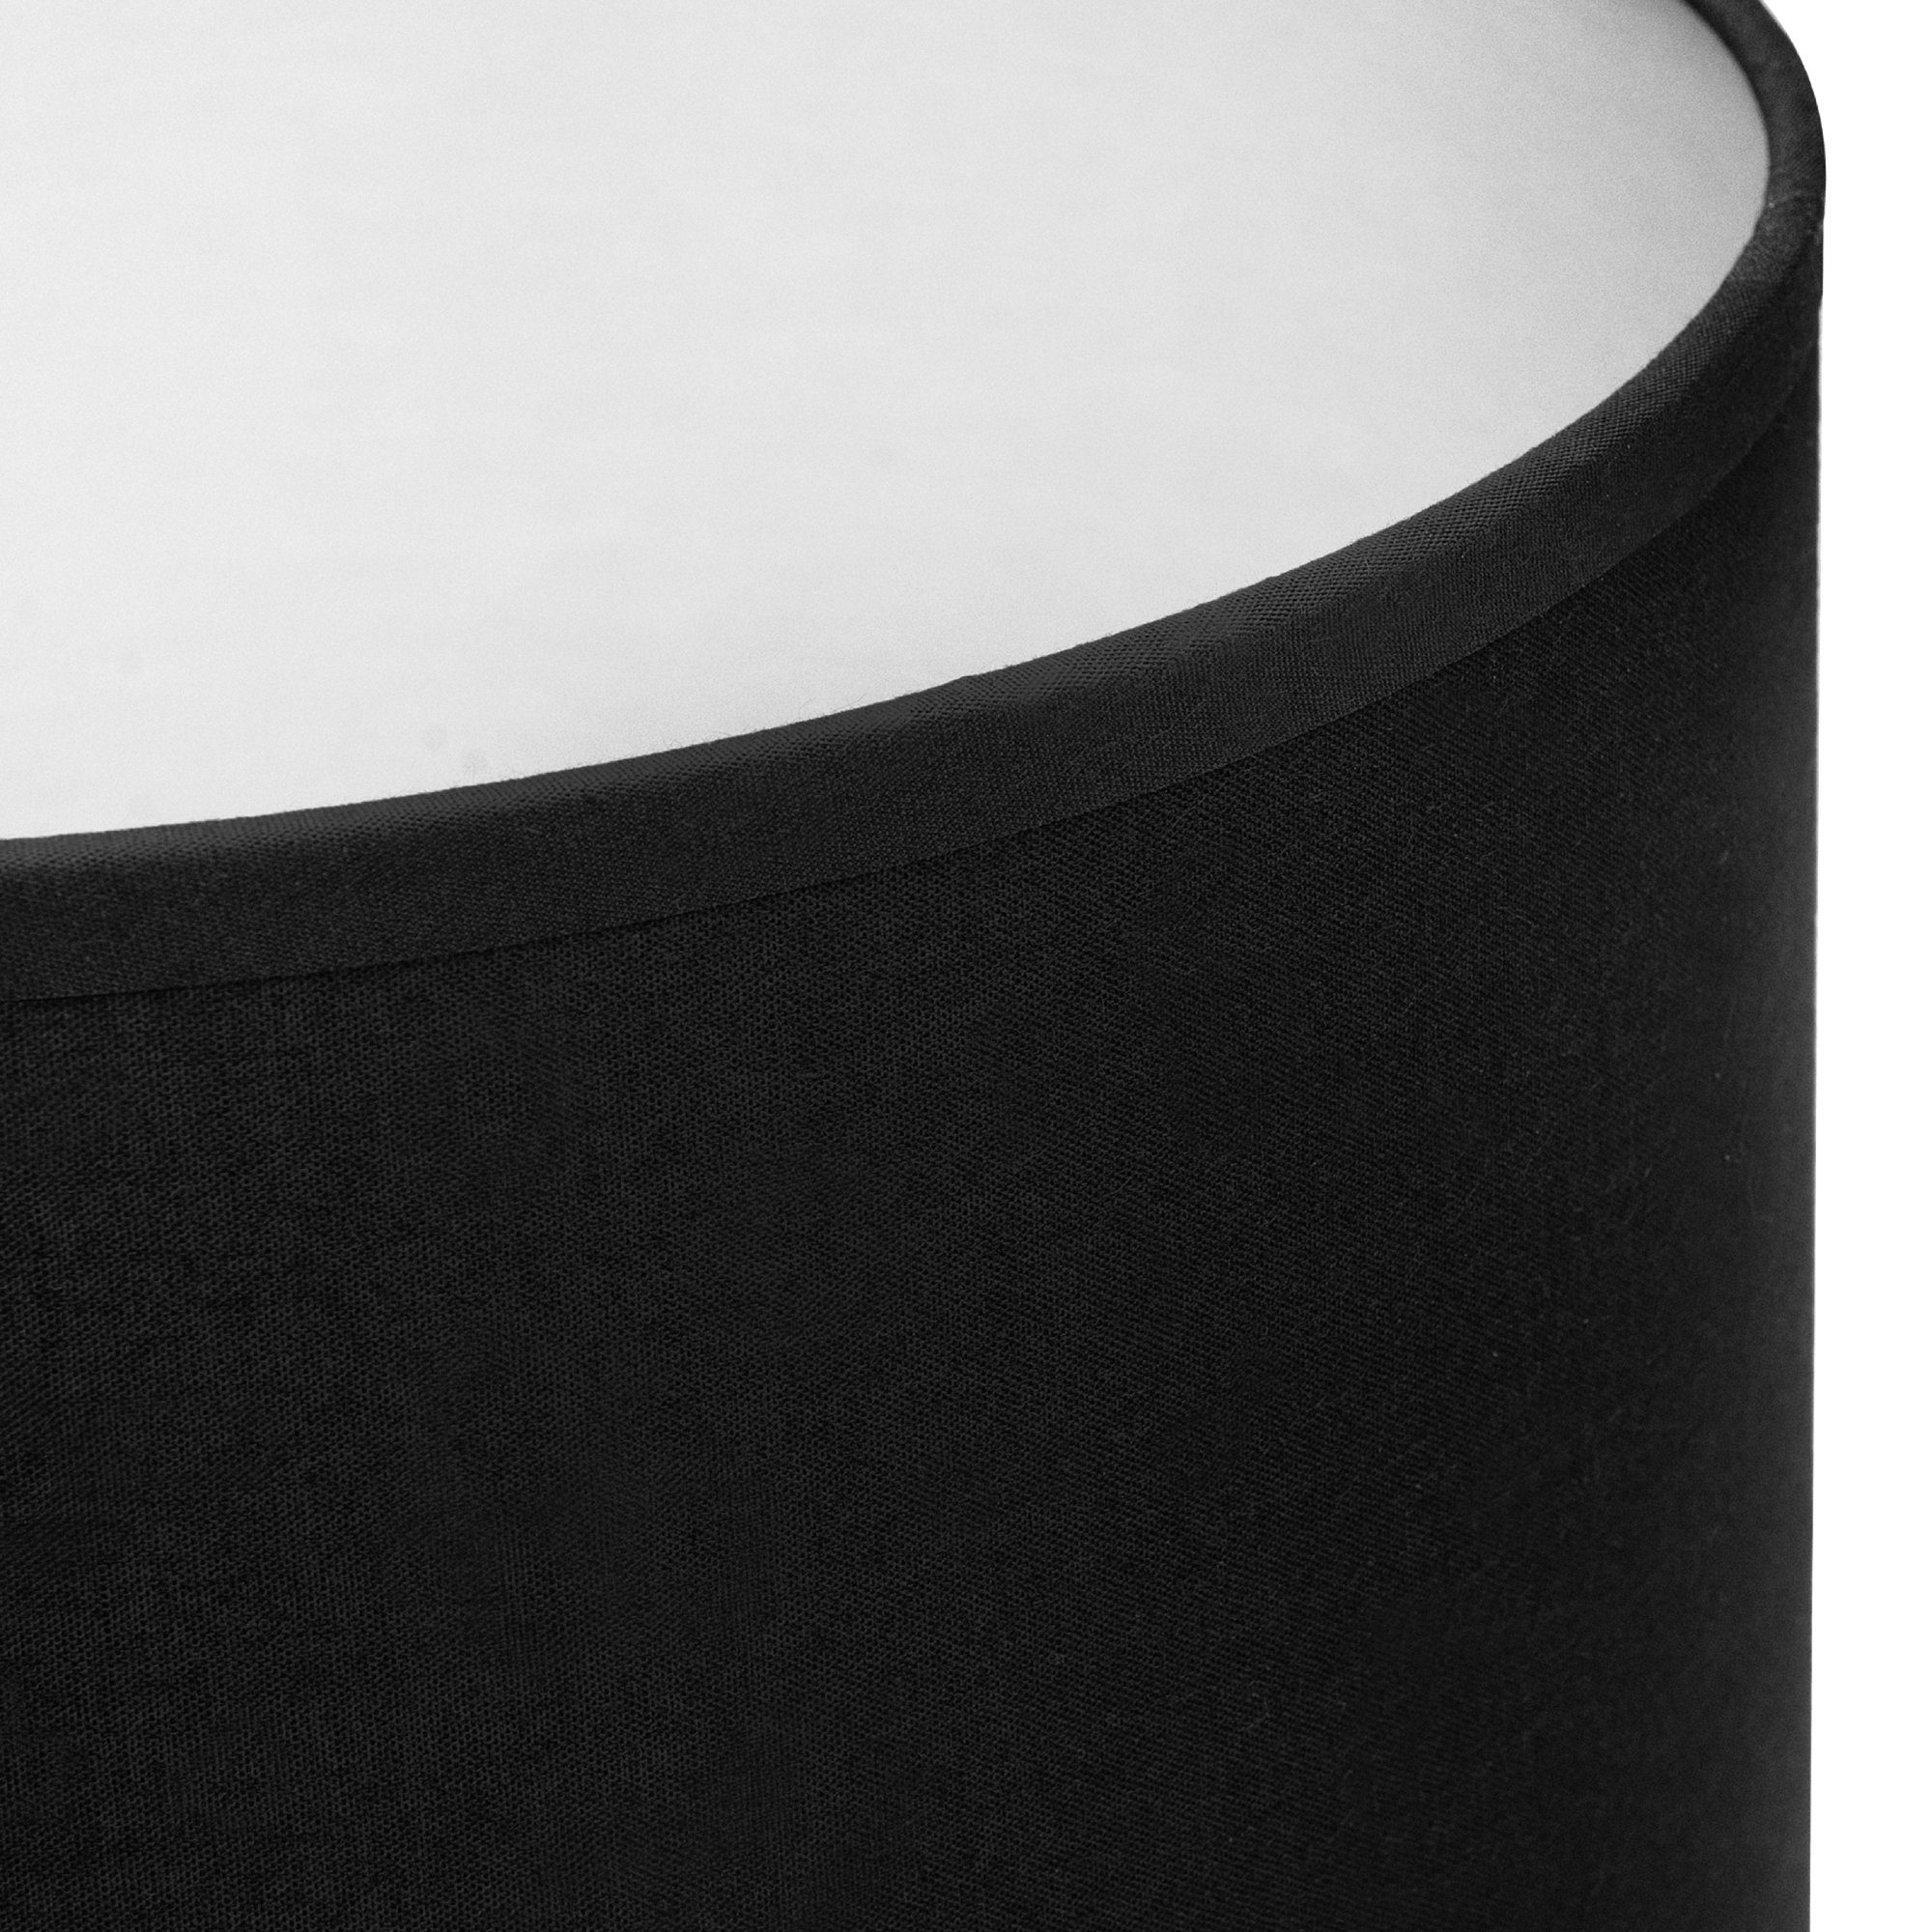 Konsimo Tischleuchte NIPER Tischlampe Tischleuchte, ohne silber schwarz Leuchtmittel 